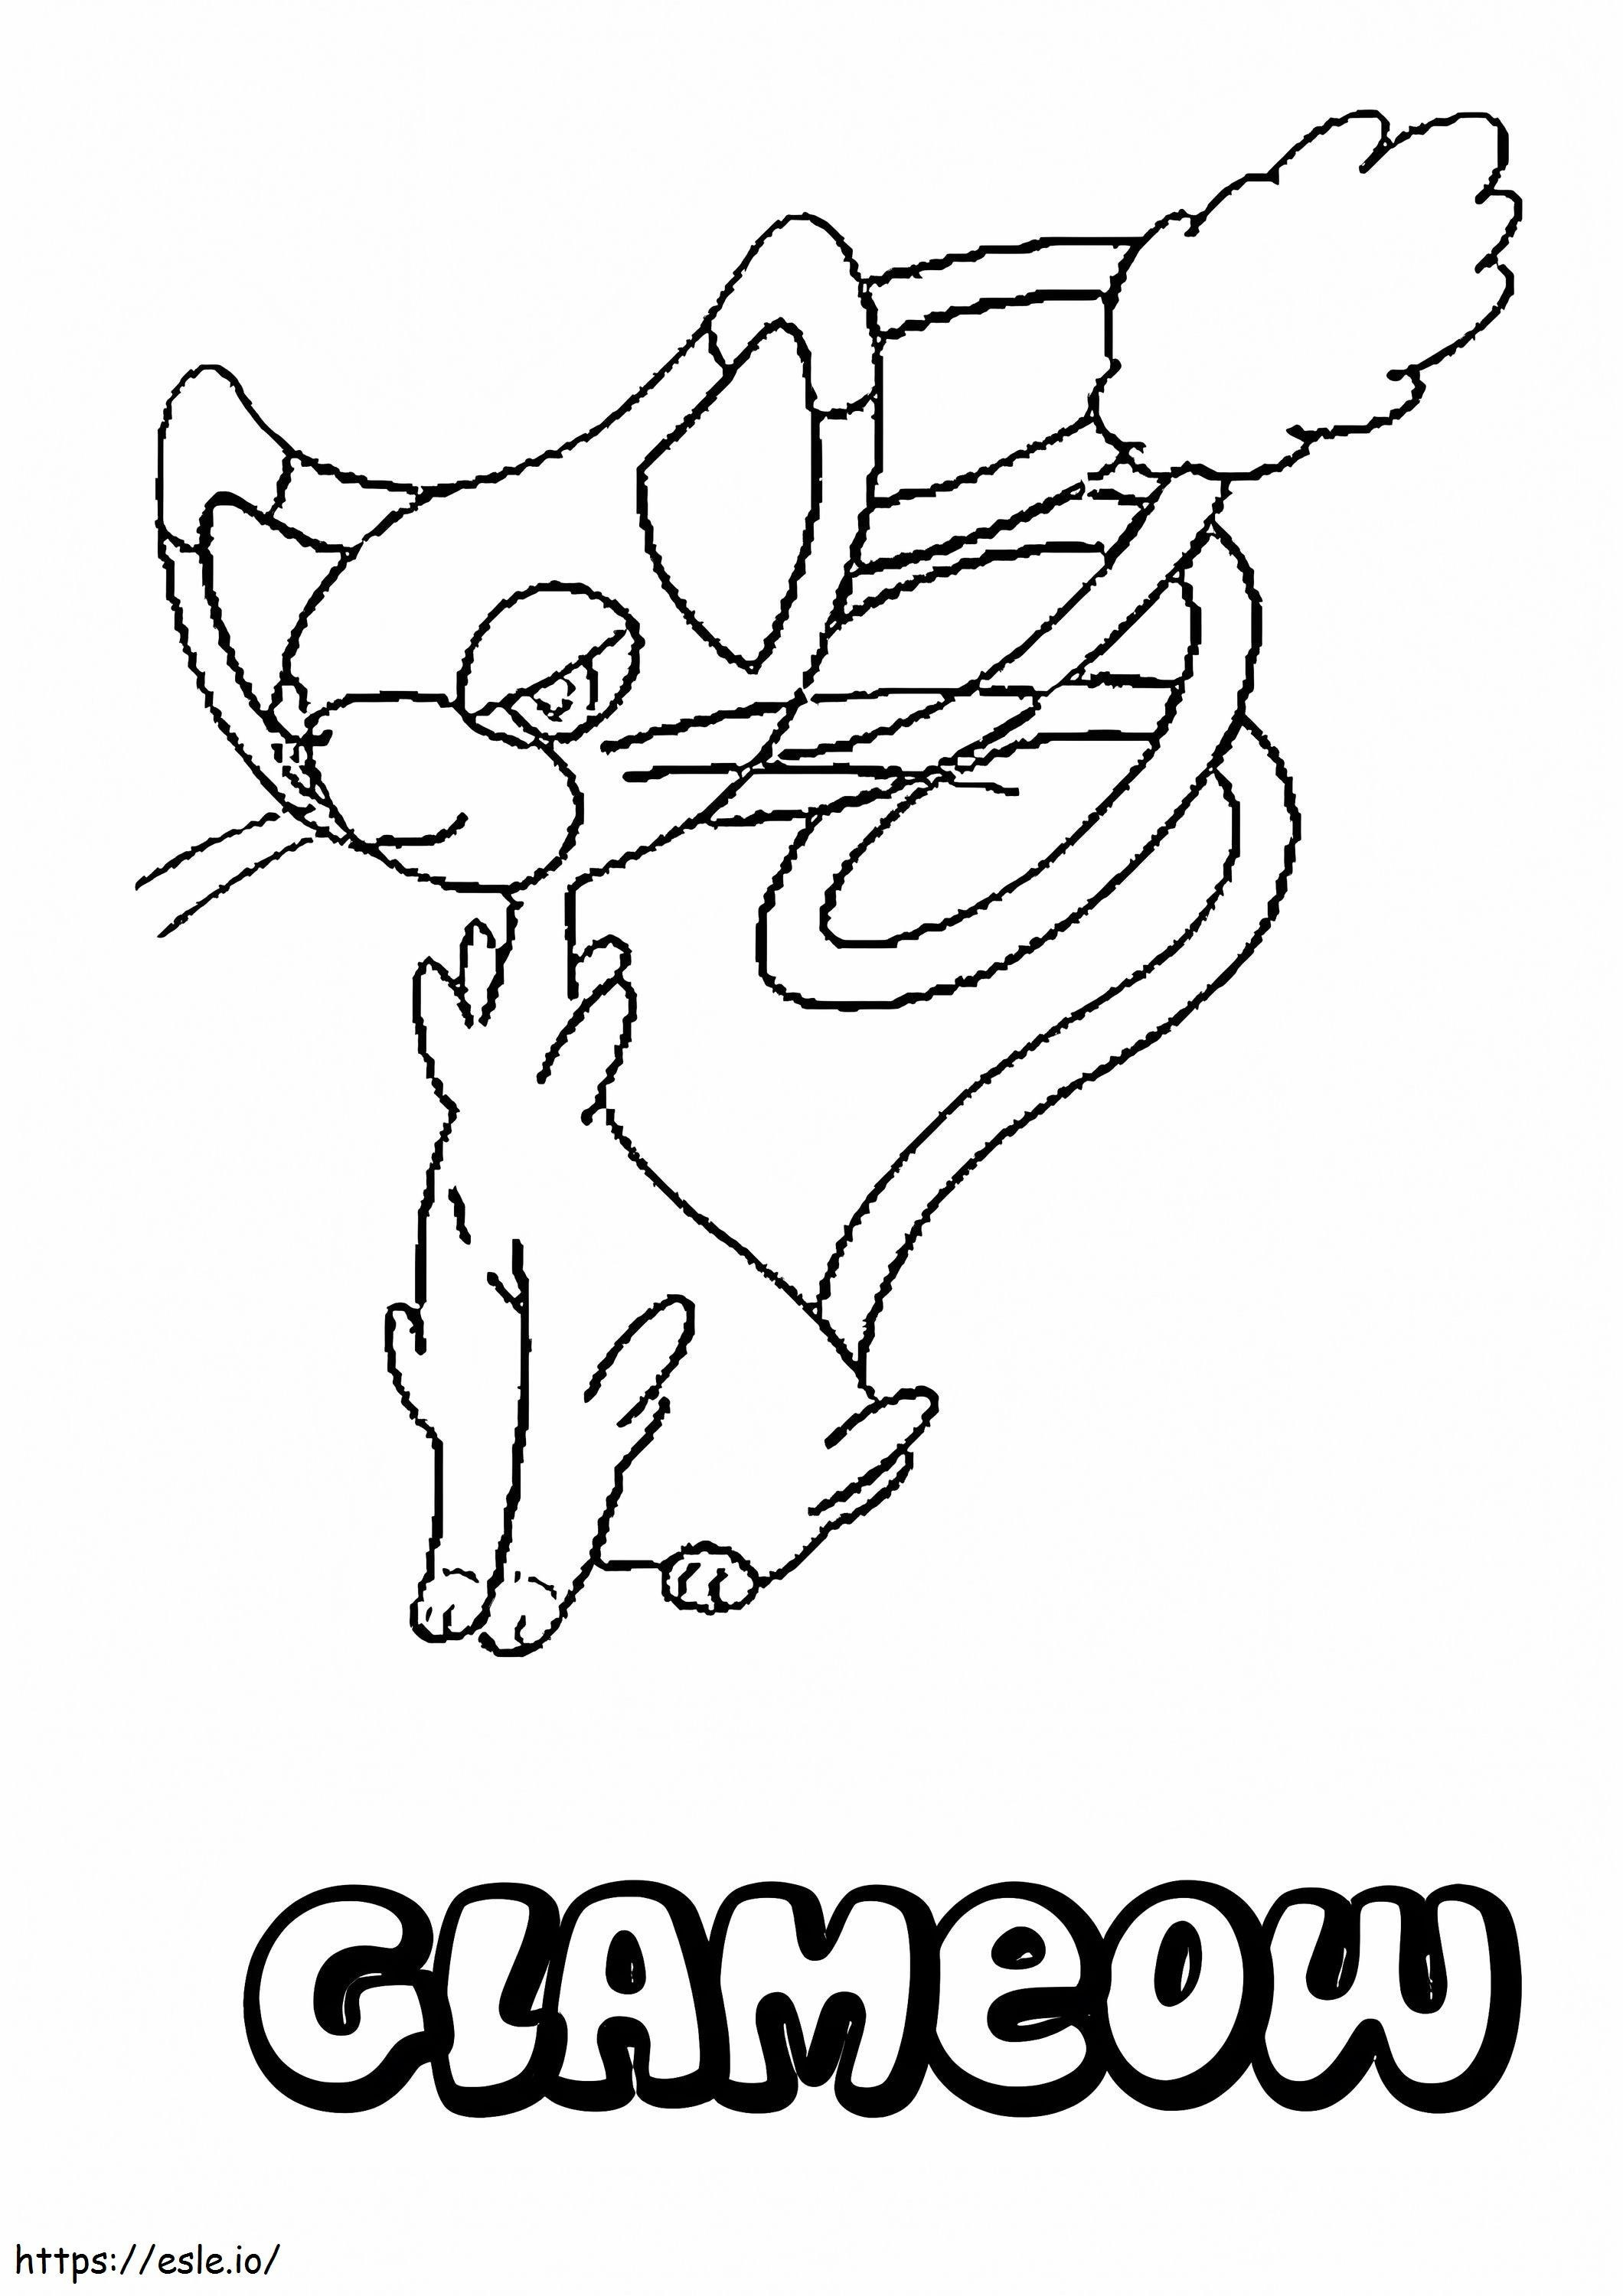 Coloriage Pokémon Glameow à imprimer dessin